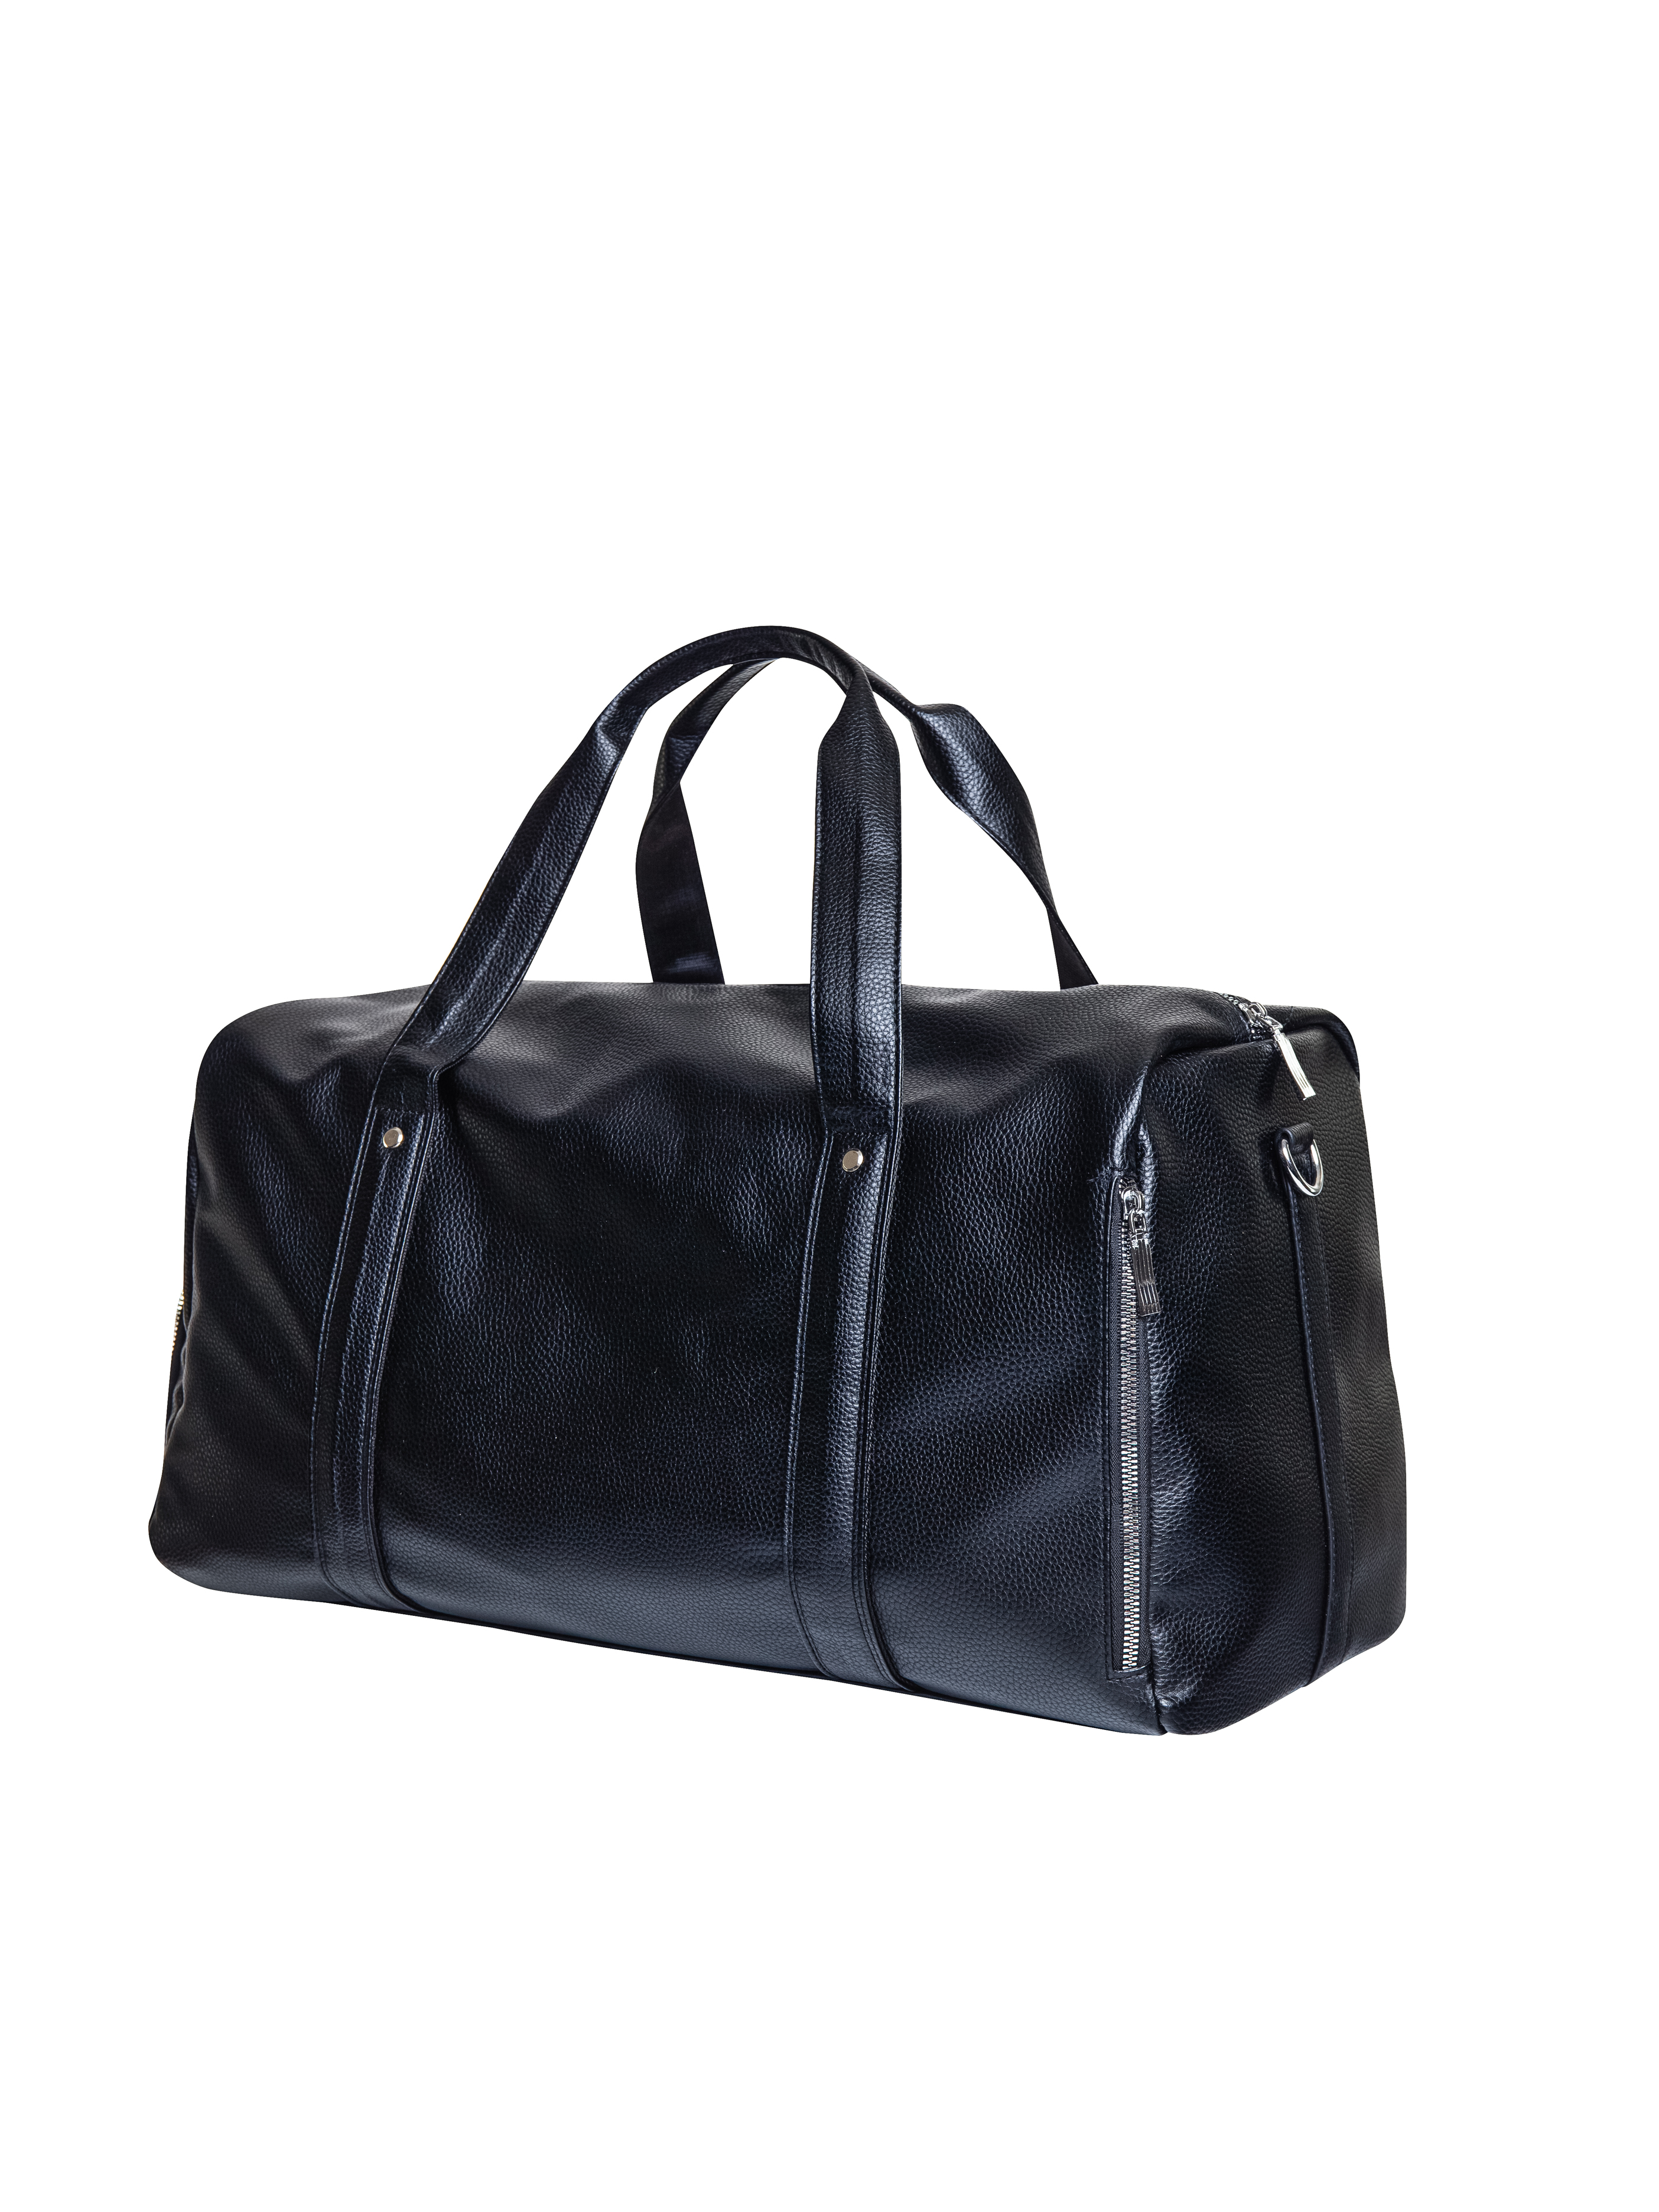 Дорожная сумка унисекс AV Bags Bag01 черная, 50х25х28 см